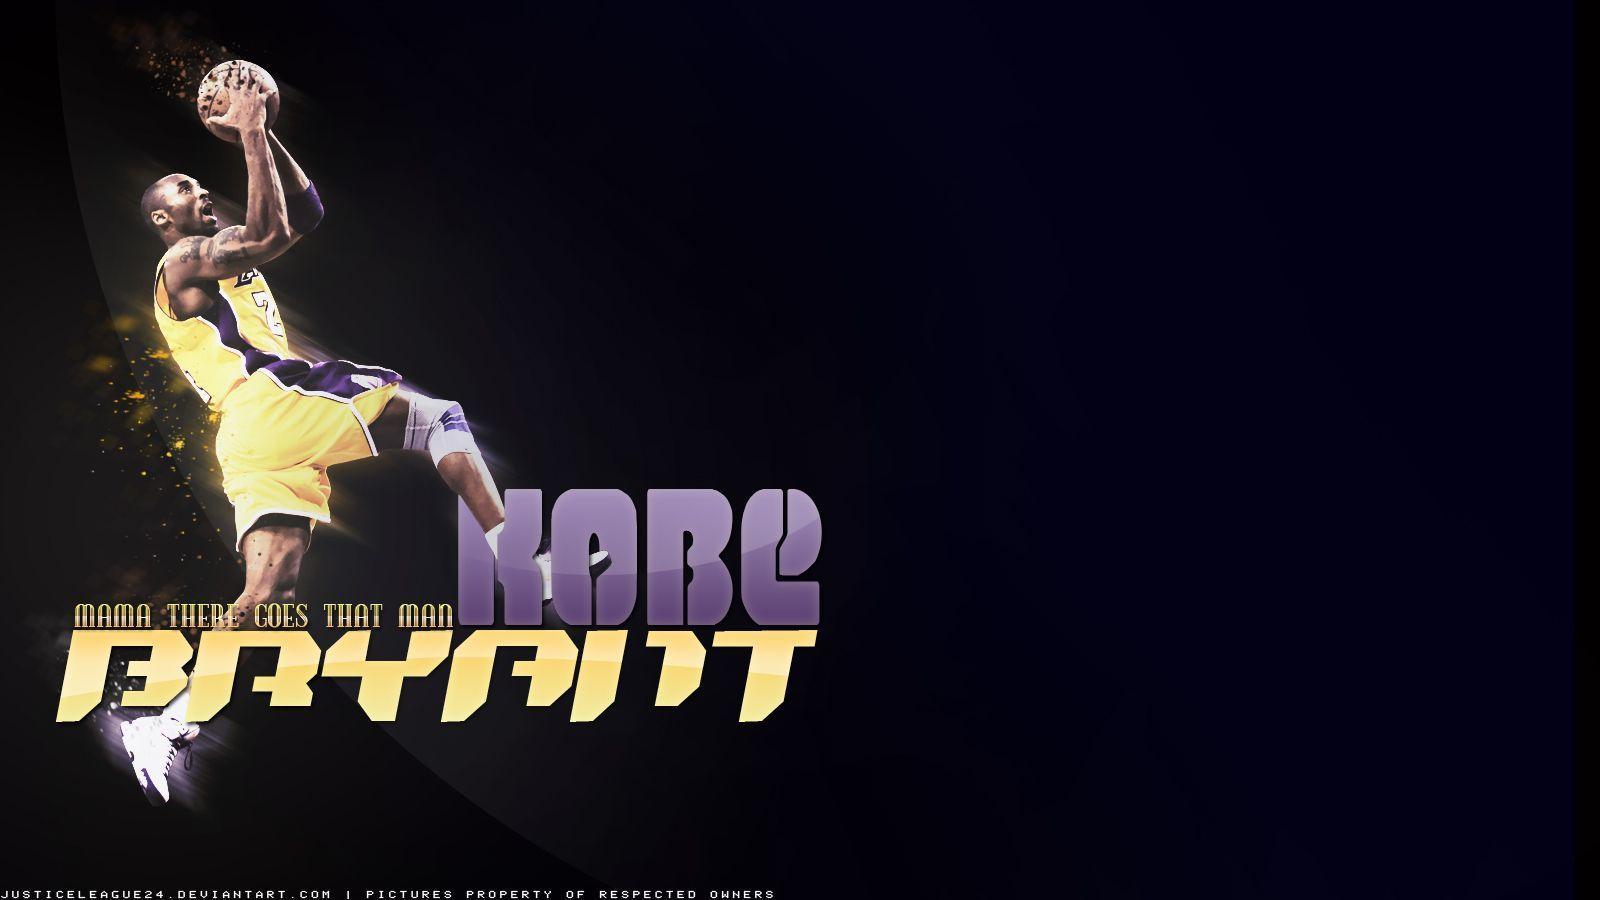 Lakers 3D Wallpaper